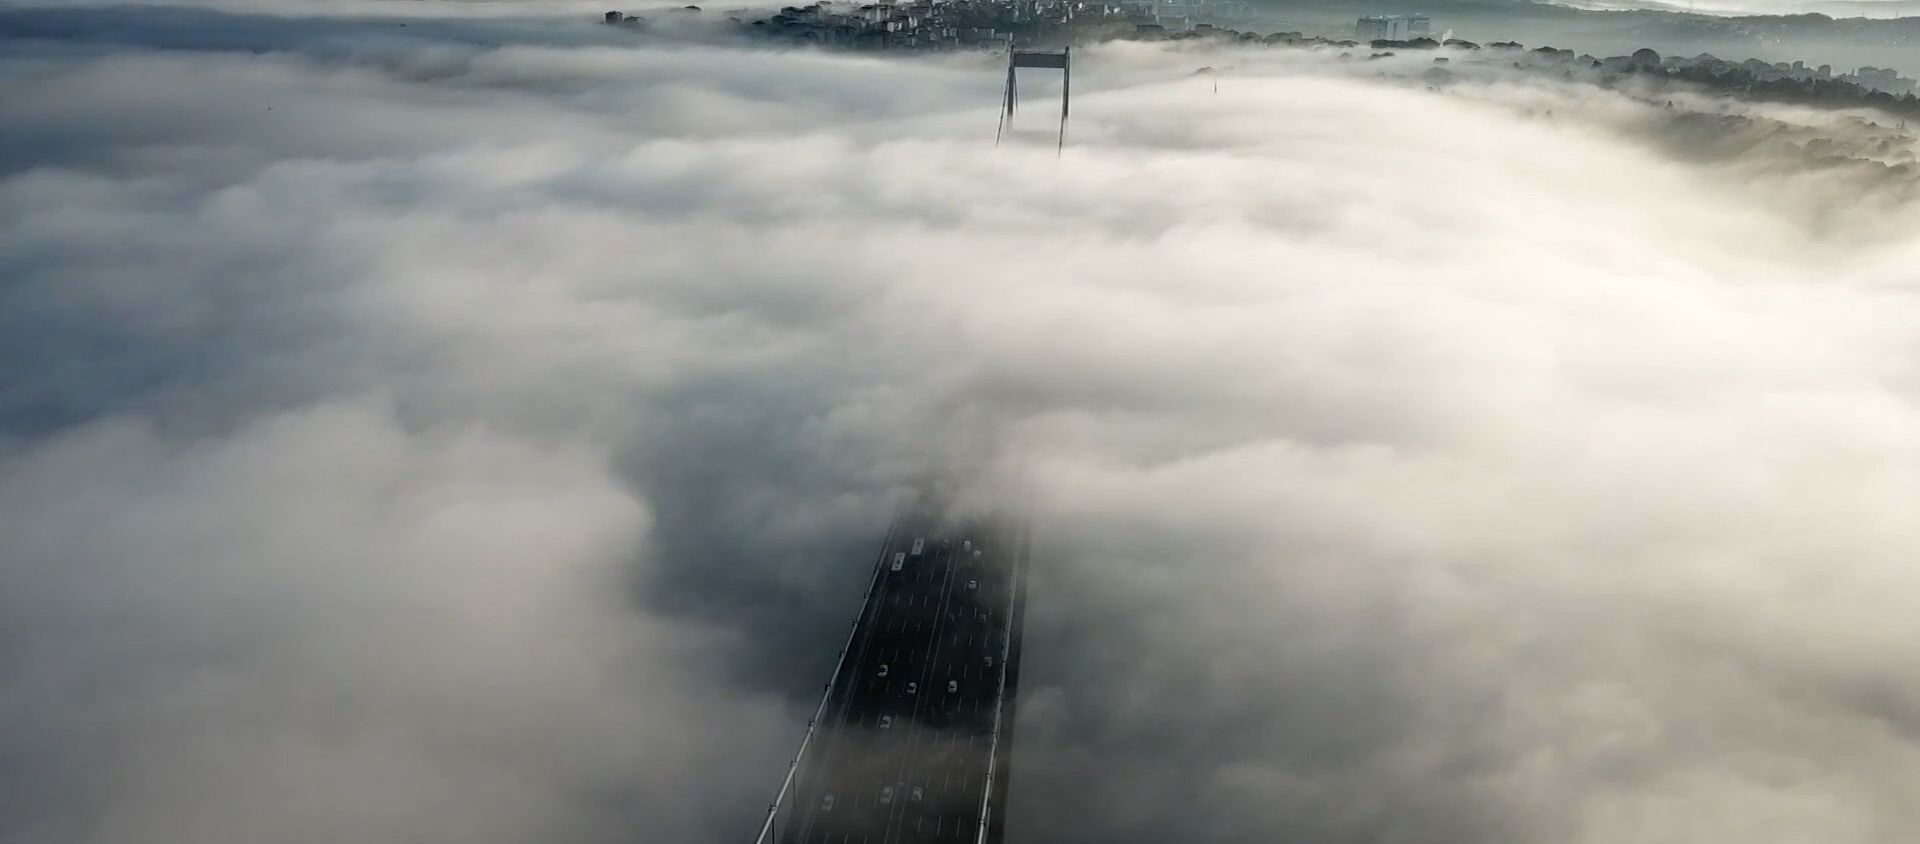 Густой туман окутал Босфорский мост, кадры с высоты - видео - Sputnik Беларусь, 1920, 25.11.2020